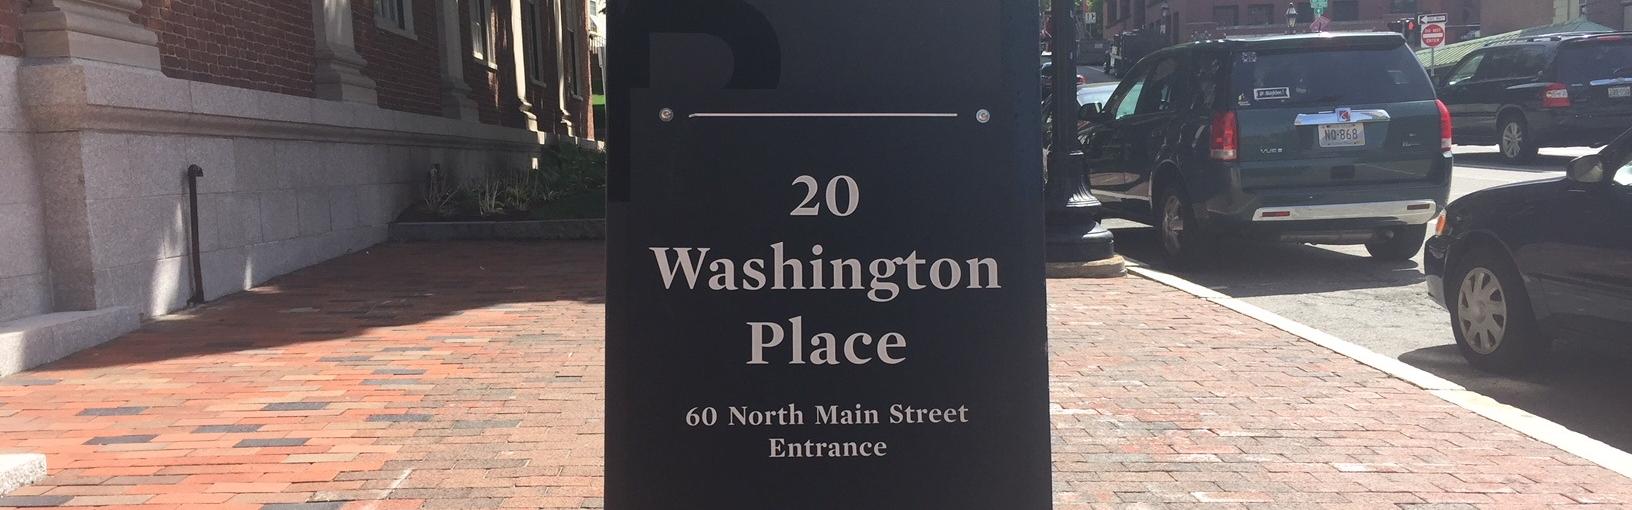 entrance to 20 Washington Place